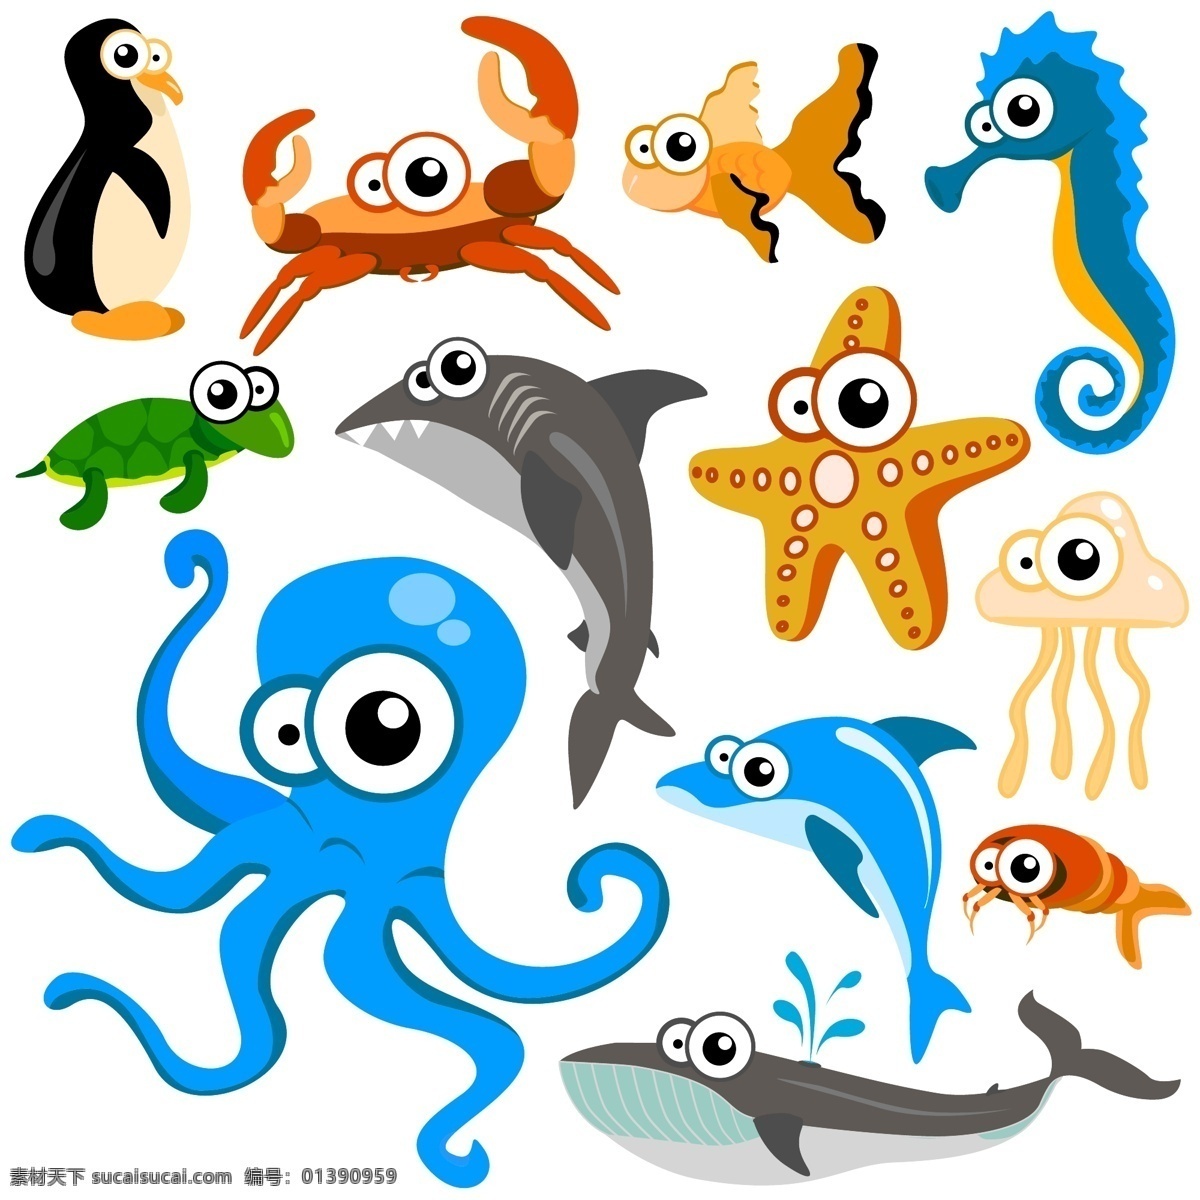 可愛動物 可愛 動物 海洋 水 魚 生物世界 野生动物